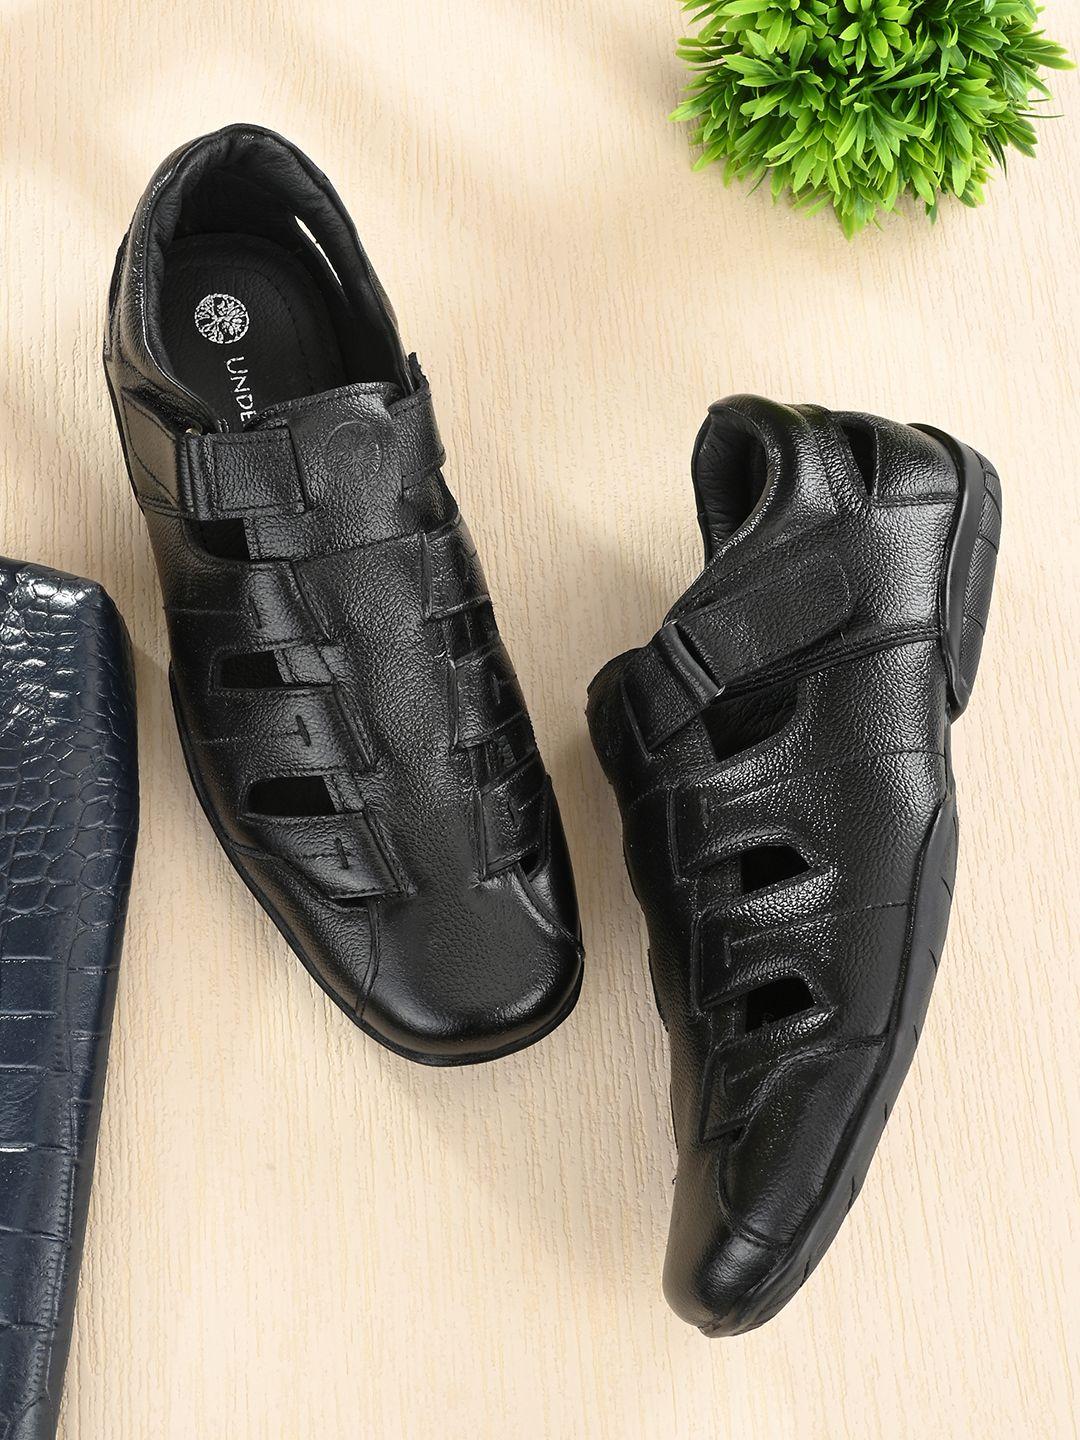 UNDERROUTE Men Black Leather Fisherman Sandals